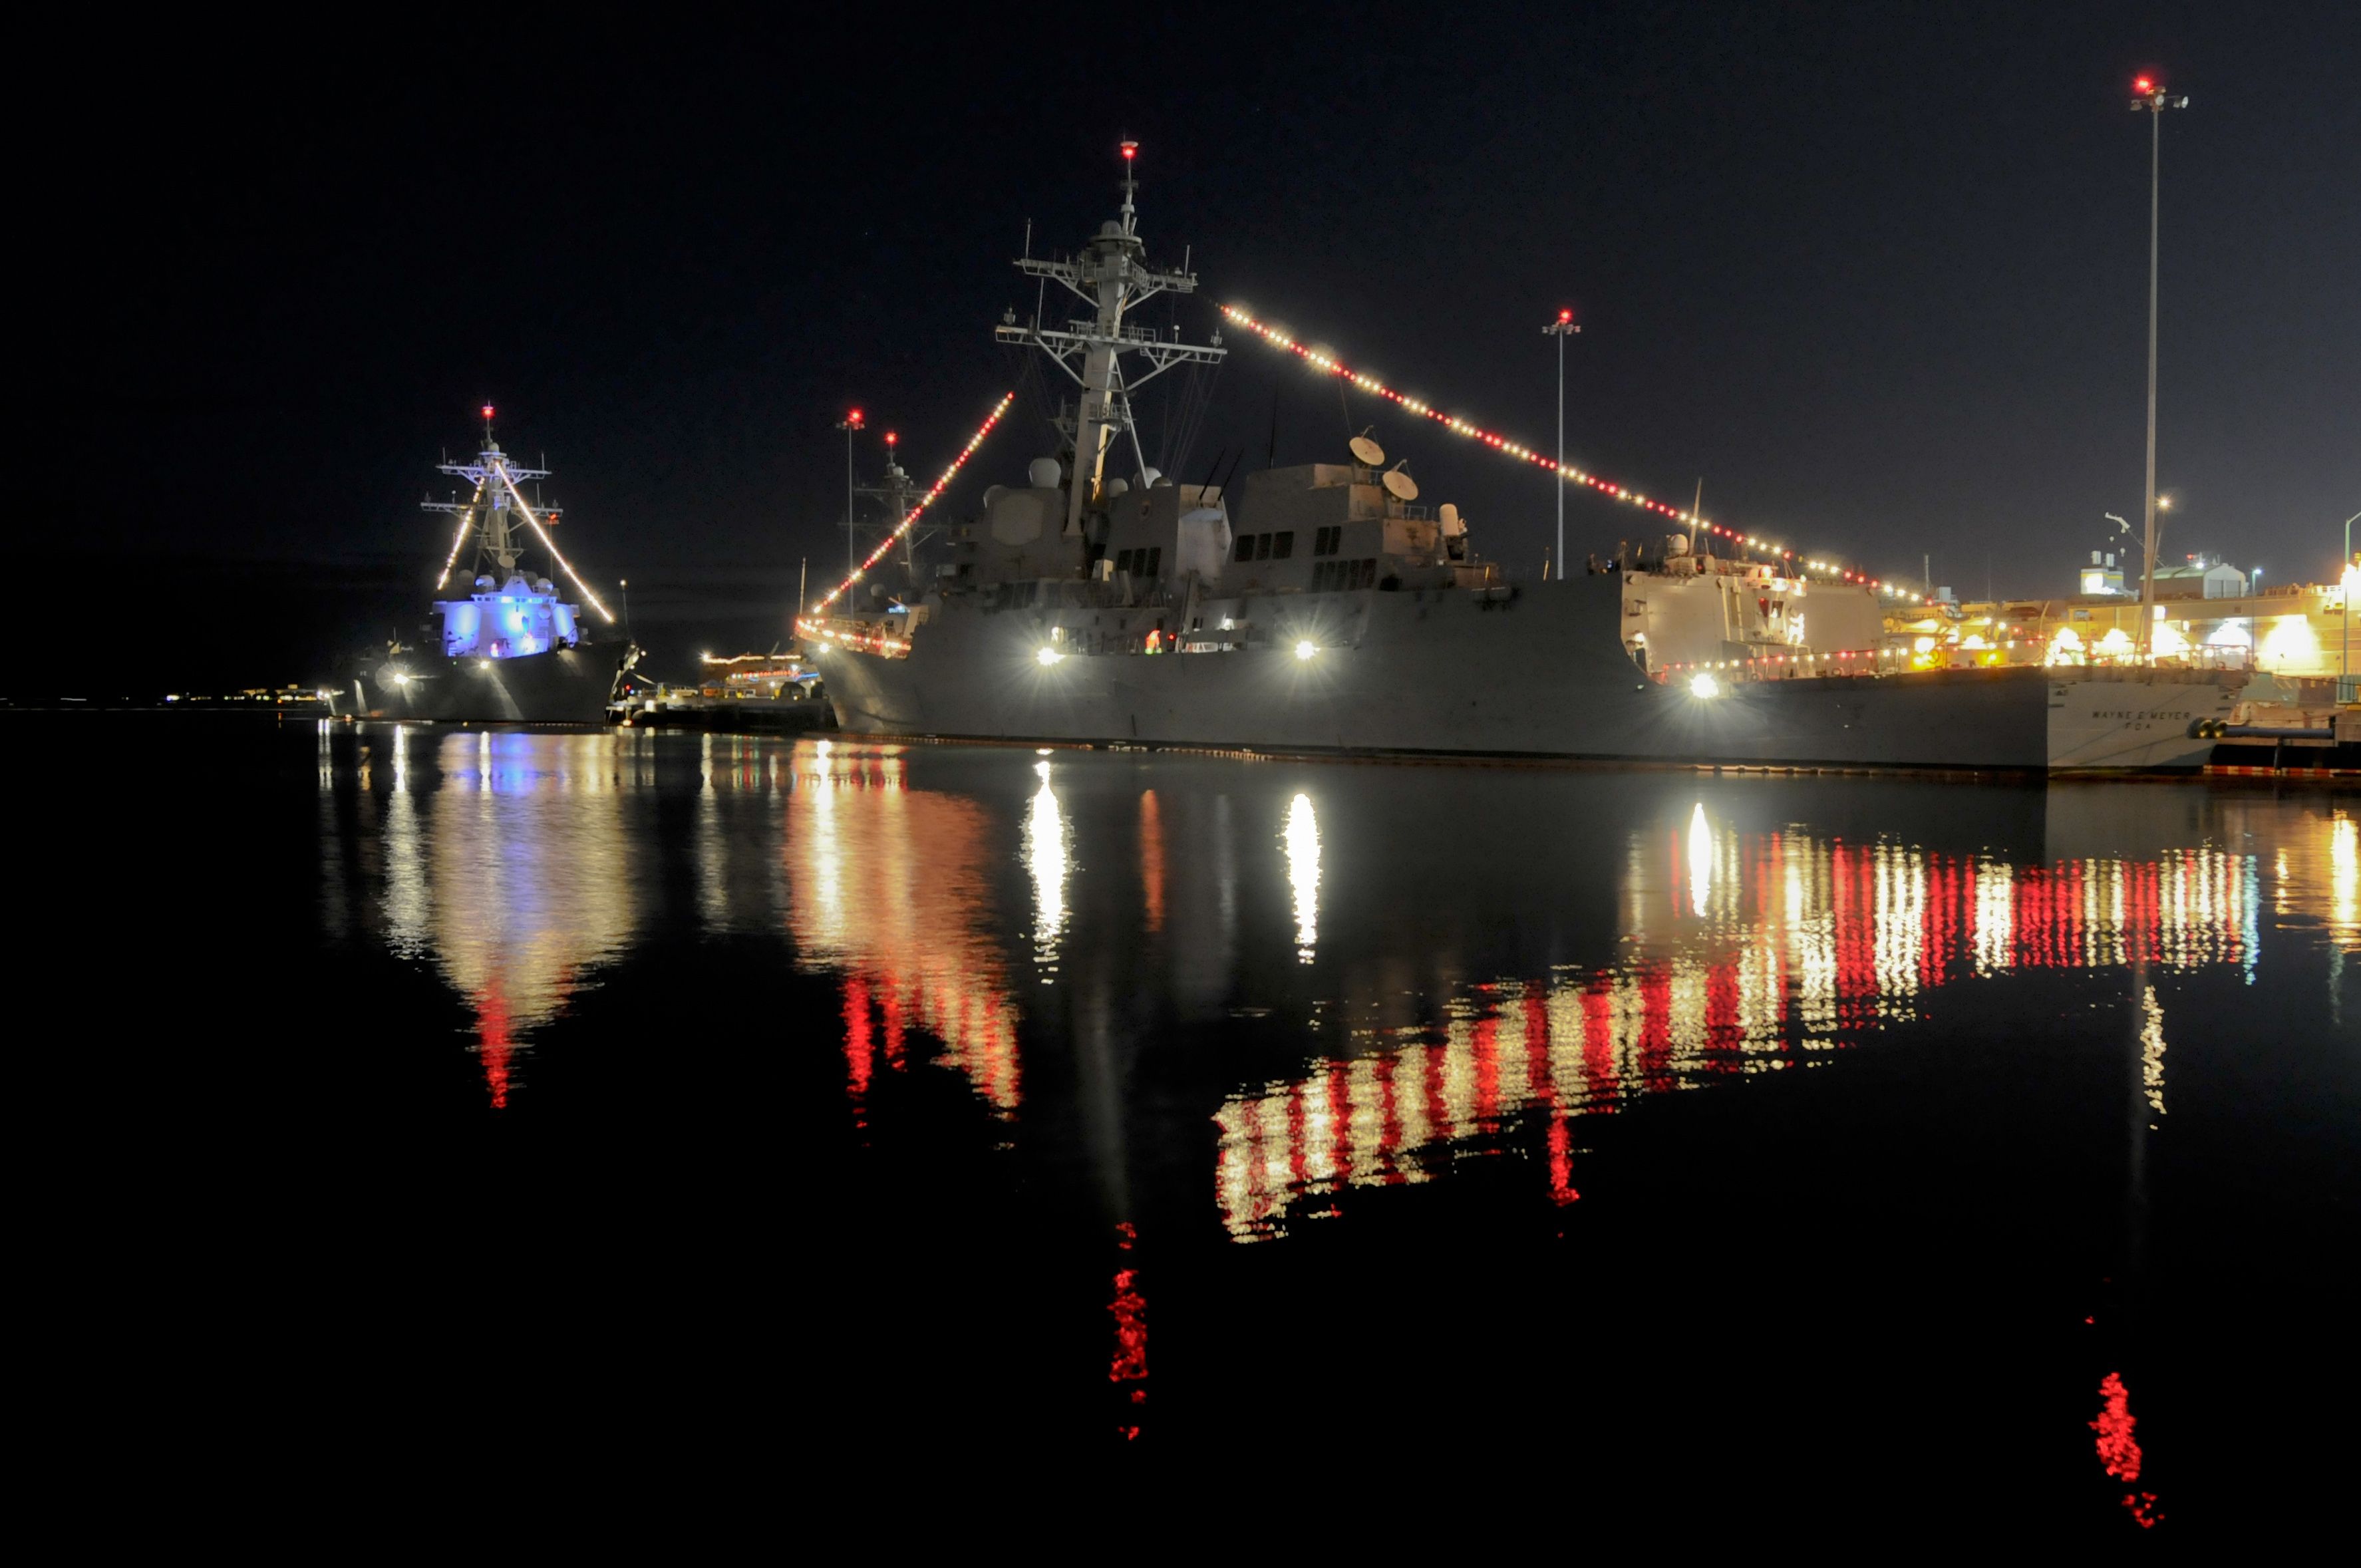 Festliche Beleuchtung in der Marinebasis San Diego Bild: U.S. Navy